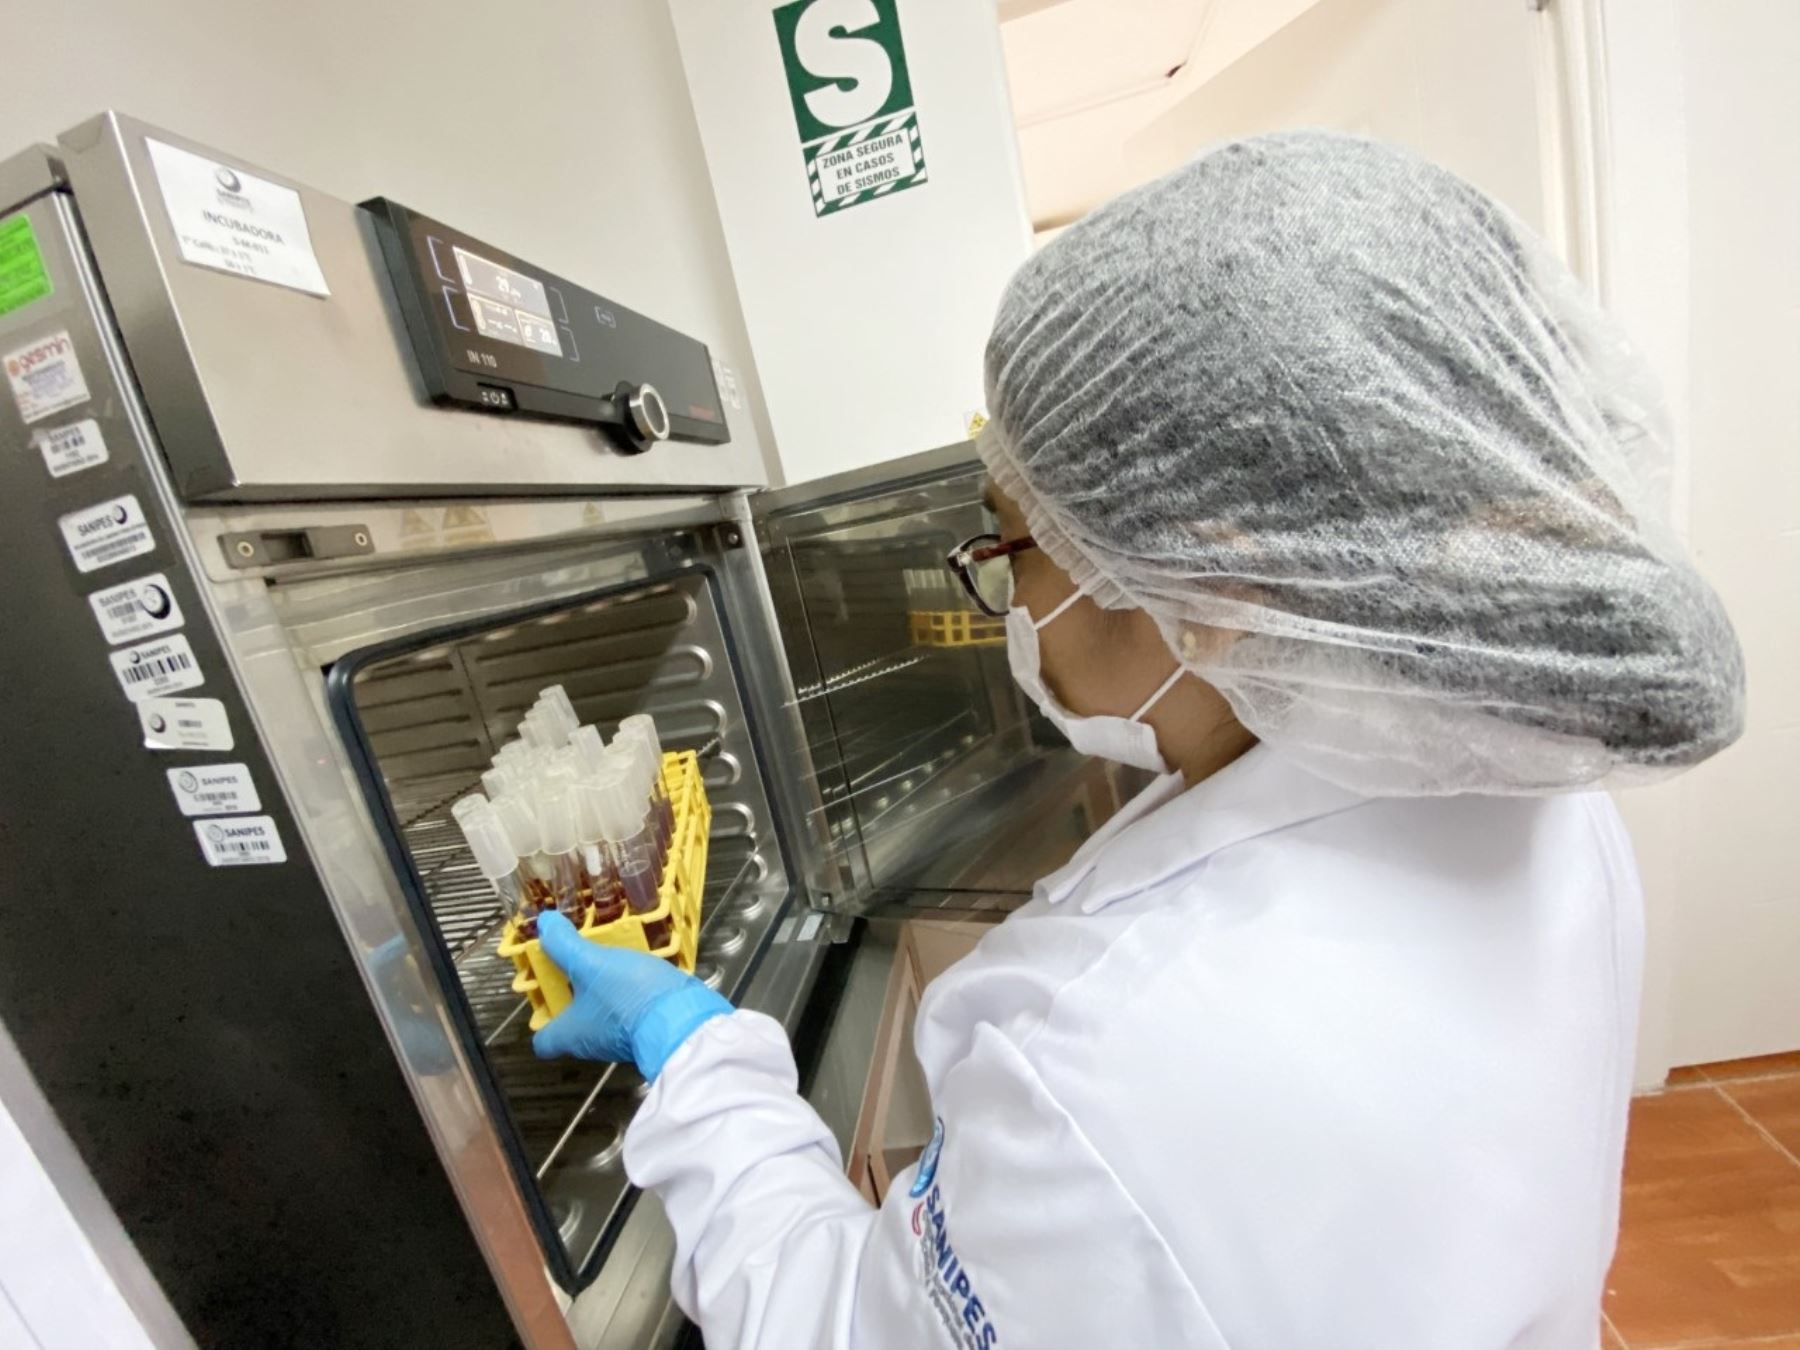 Laboratorios de Sanipes de Piura y Callao obtienen reconocimiento internacional y están aptos para realizar actividades de vigilancia y control sanitario de molusco bivalvos. ANDINA/Difusión